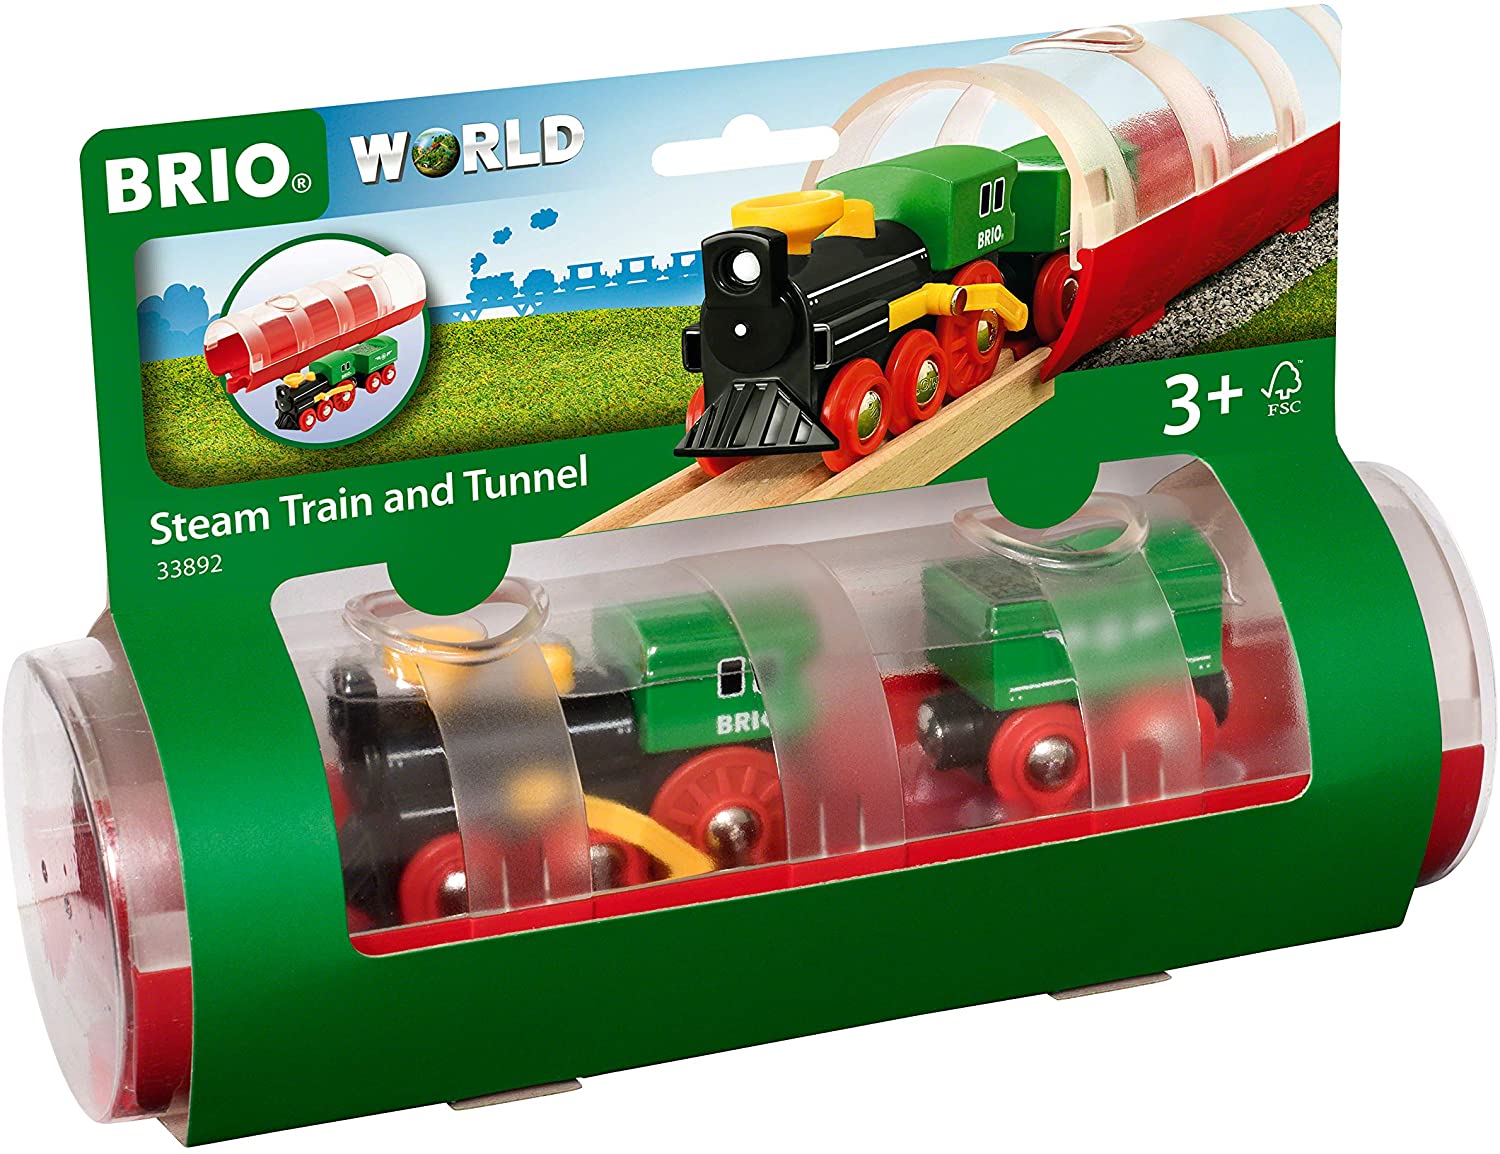 BRIO Steam Train and Tunnel